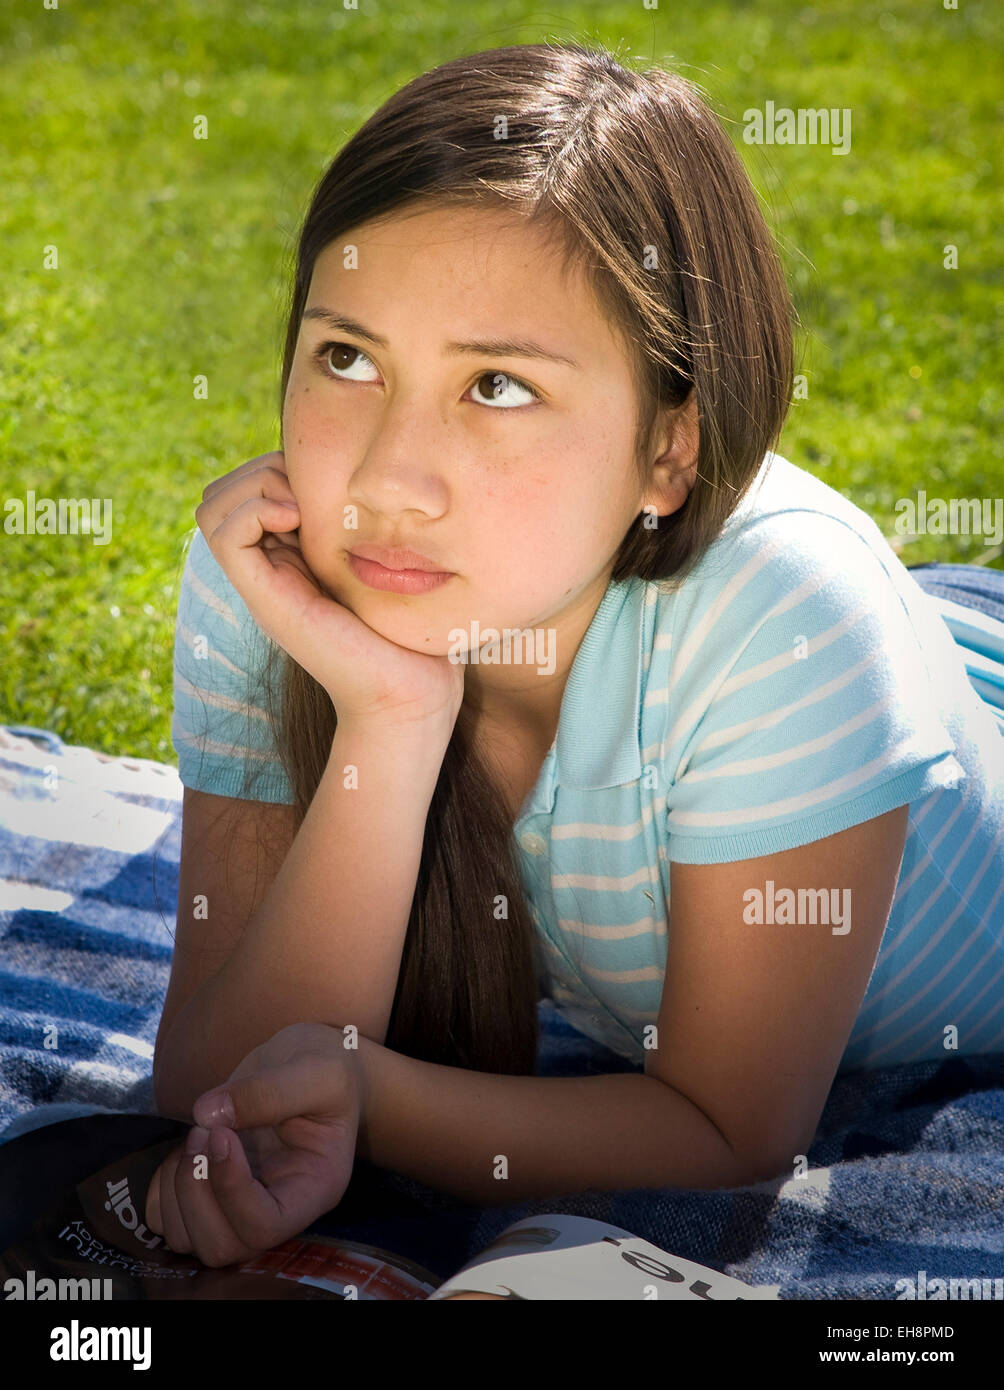 Junge Mensch Menschen Vietnamesische/Kaukasische Mädchen 11-13 Jahre alten Festlegung auf Magen auf Gras meditieren Vorderansicht Tween tweens HERR © Myrleen Pearson Stockfoto